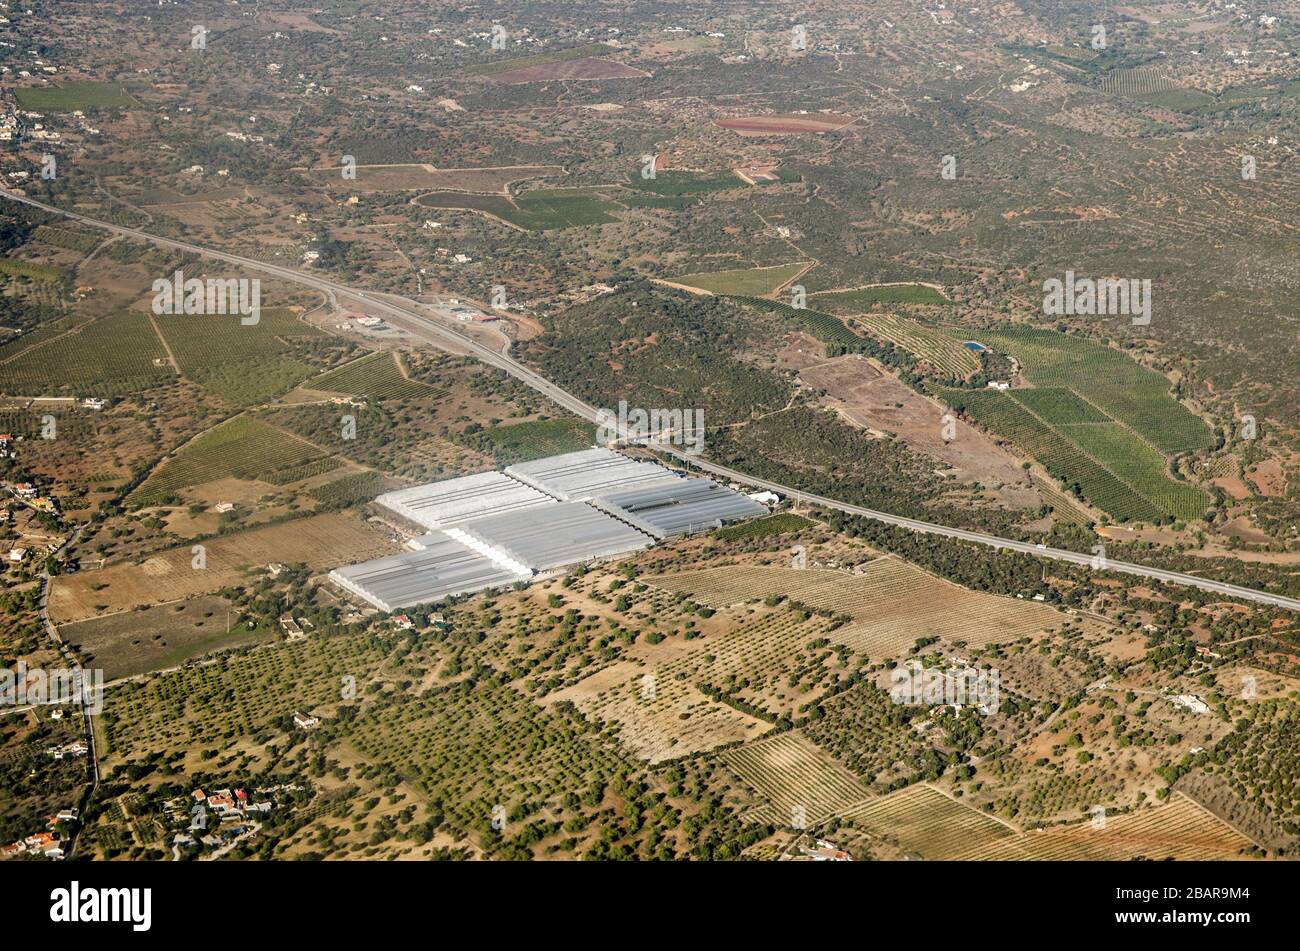 Luftbild der von der Hubel-Gesellschaft in Fazenda Nova in der Region Faro in Portugal betriebenen Gewächshäuser die A22 durchschneidet die Landschaft. Stockfoto